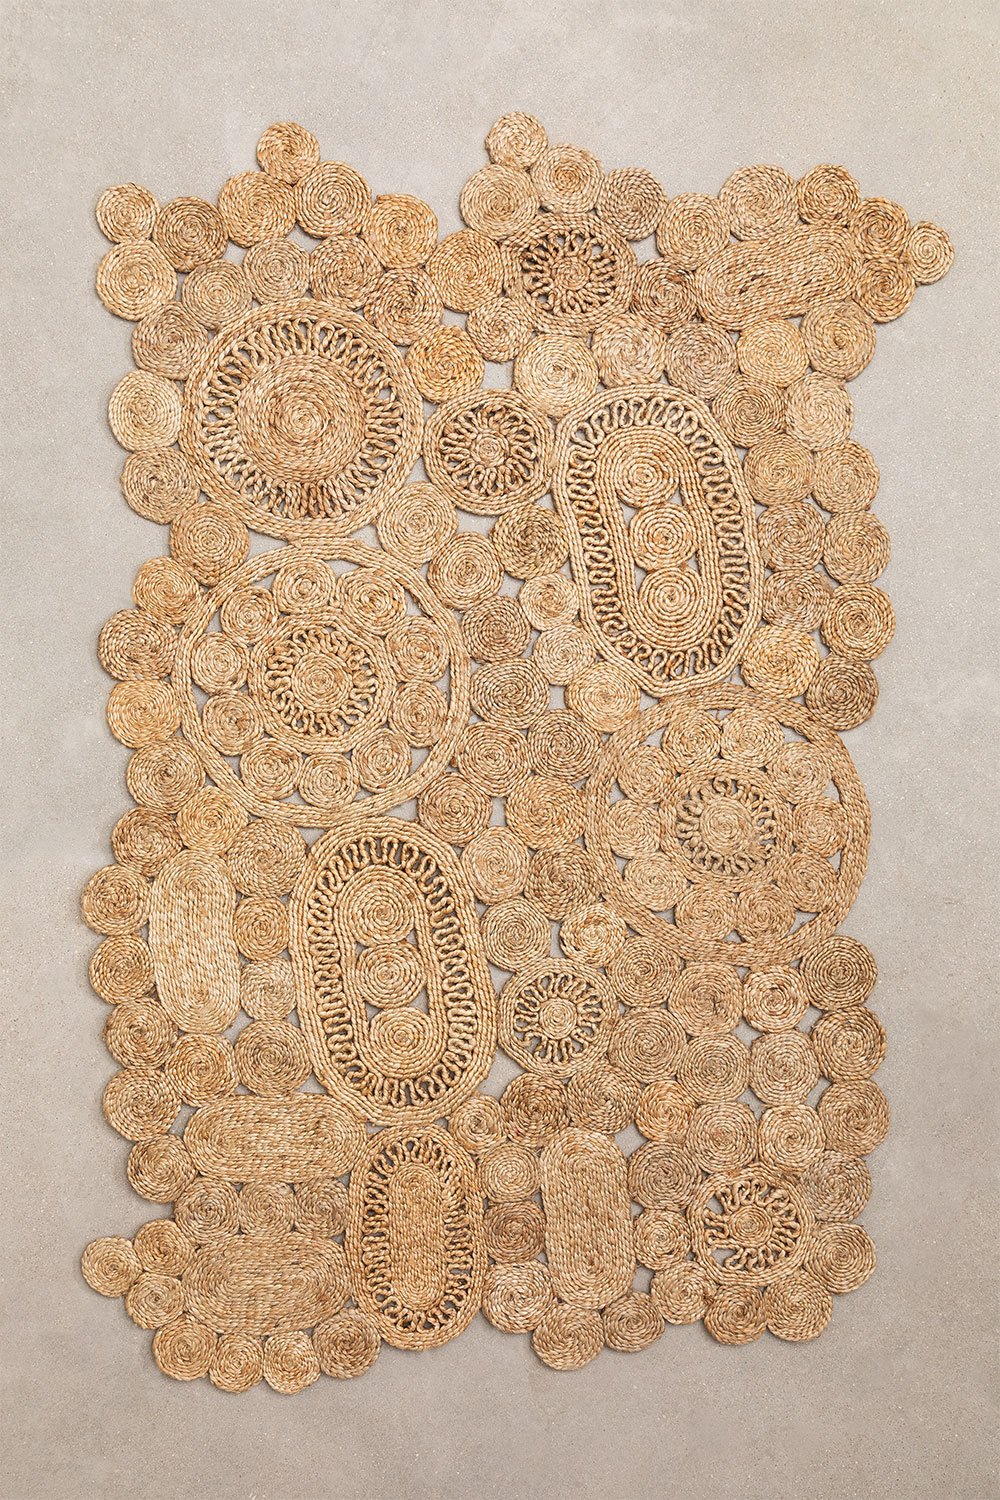 Vloerkleed in natuurlijke jute (205x130 cm) Syrah, galerij beeld 1